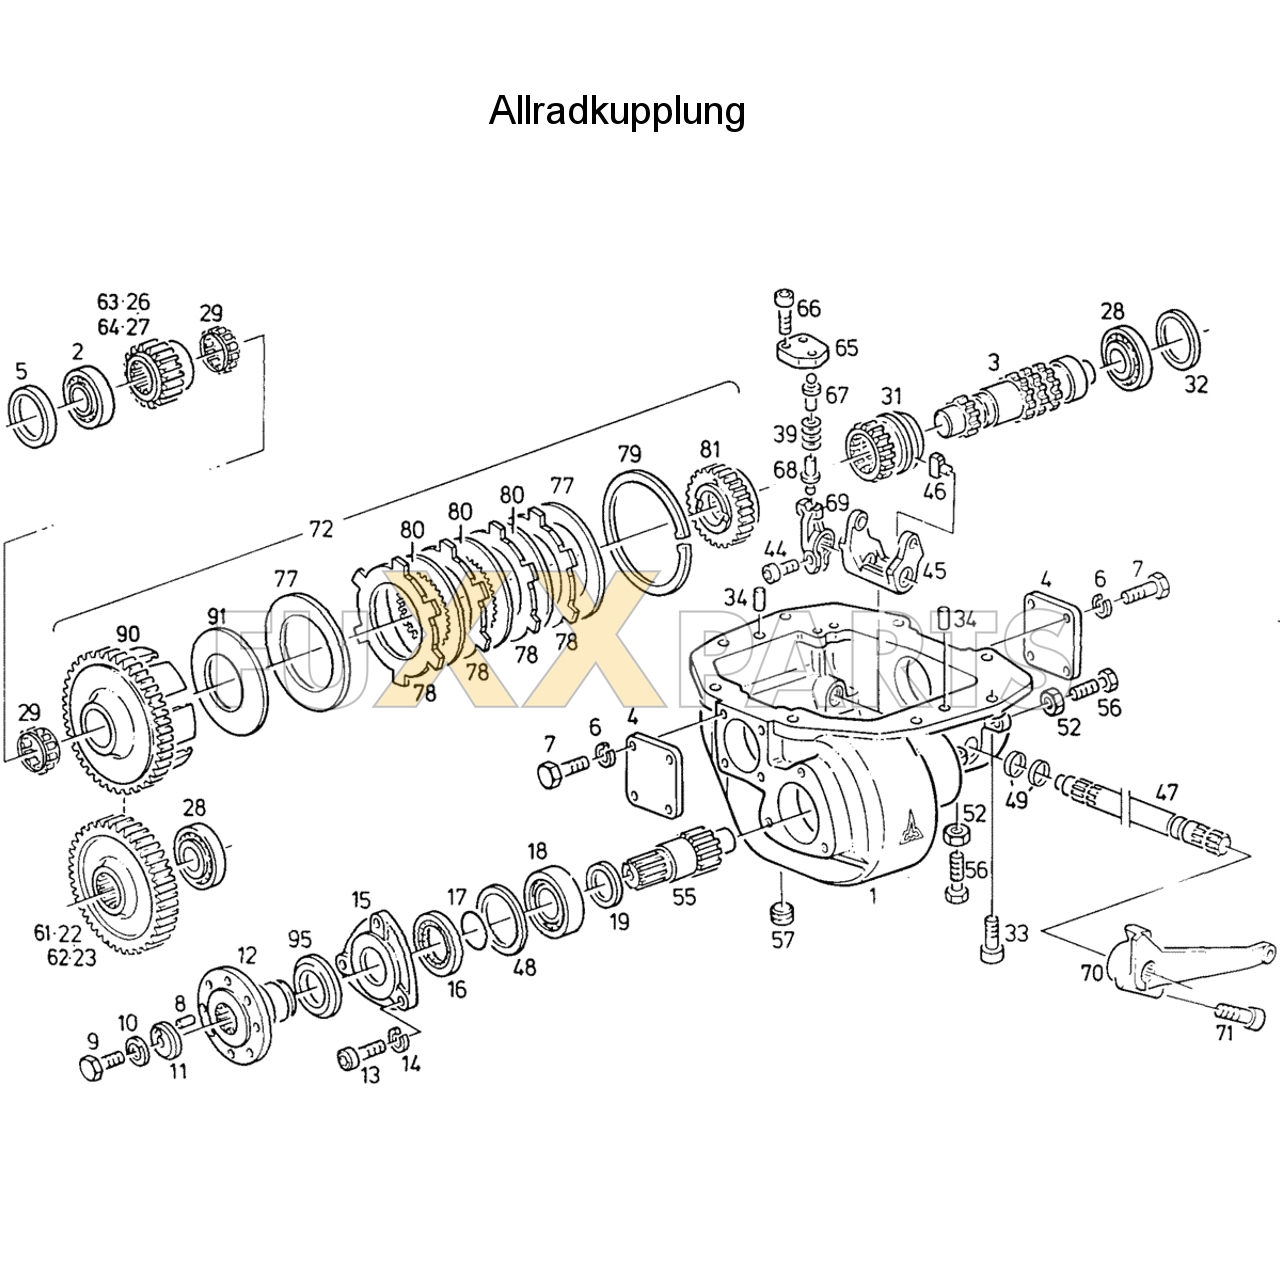 D 7807 C Allradkupplung